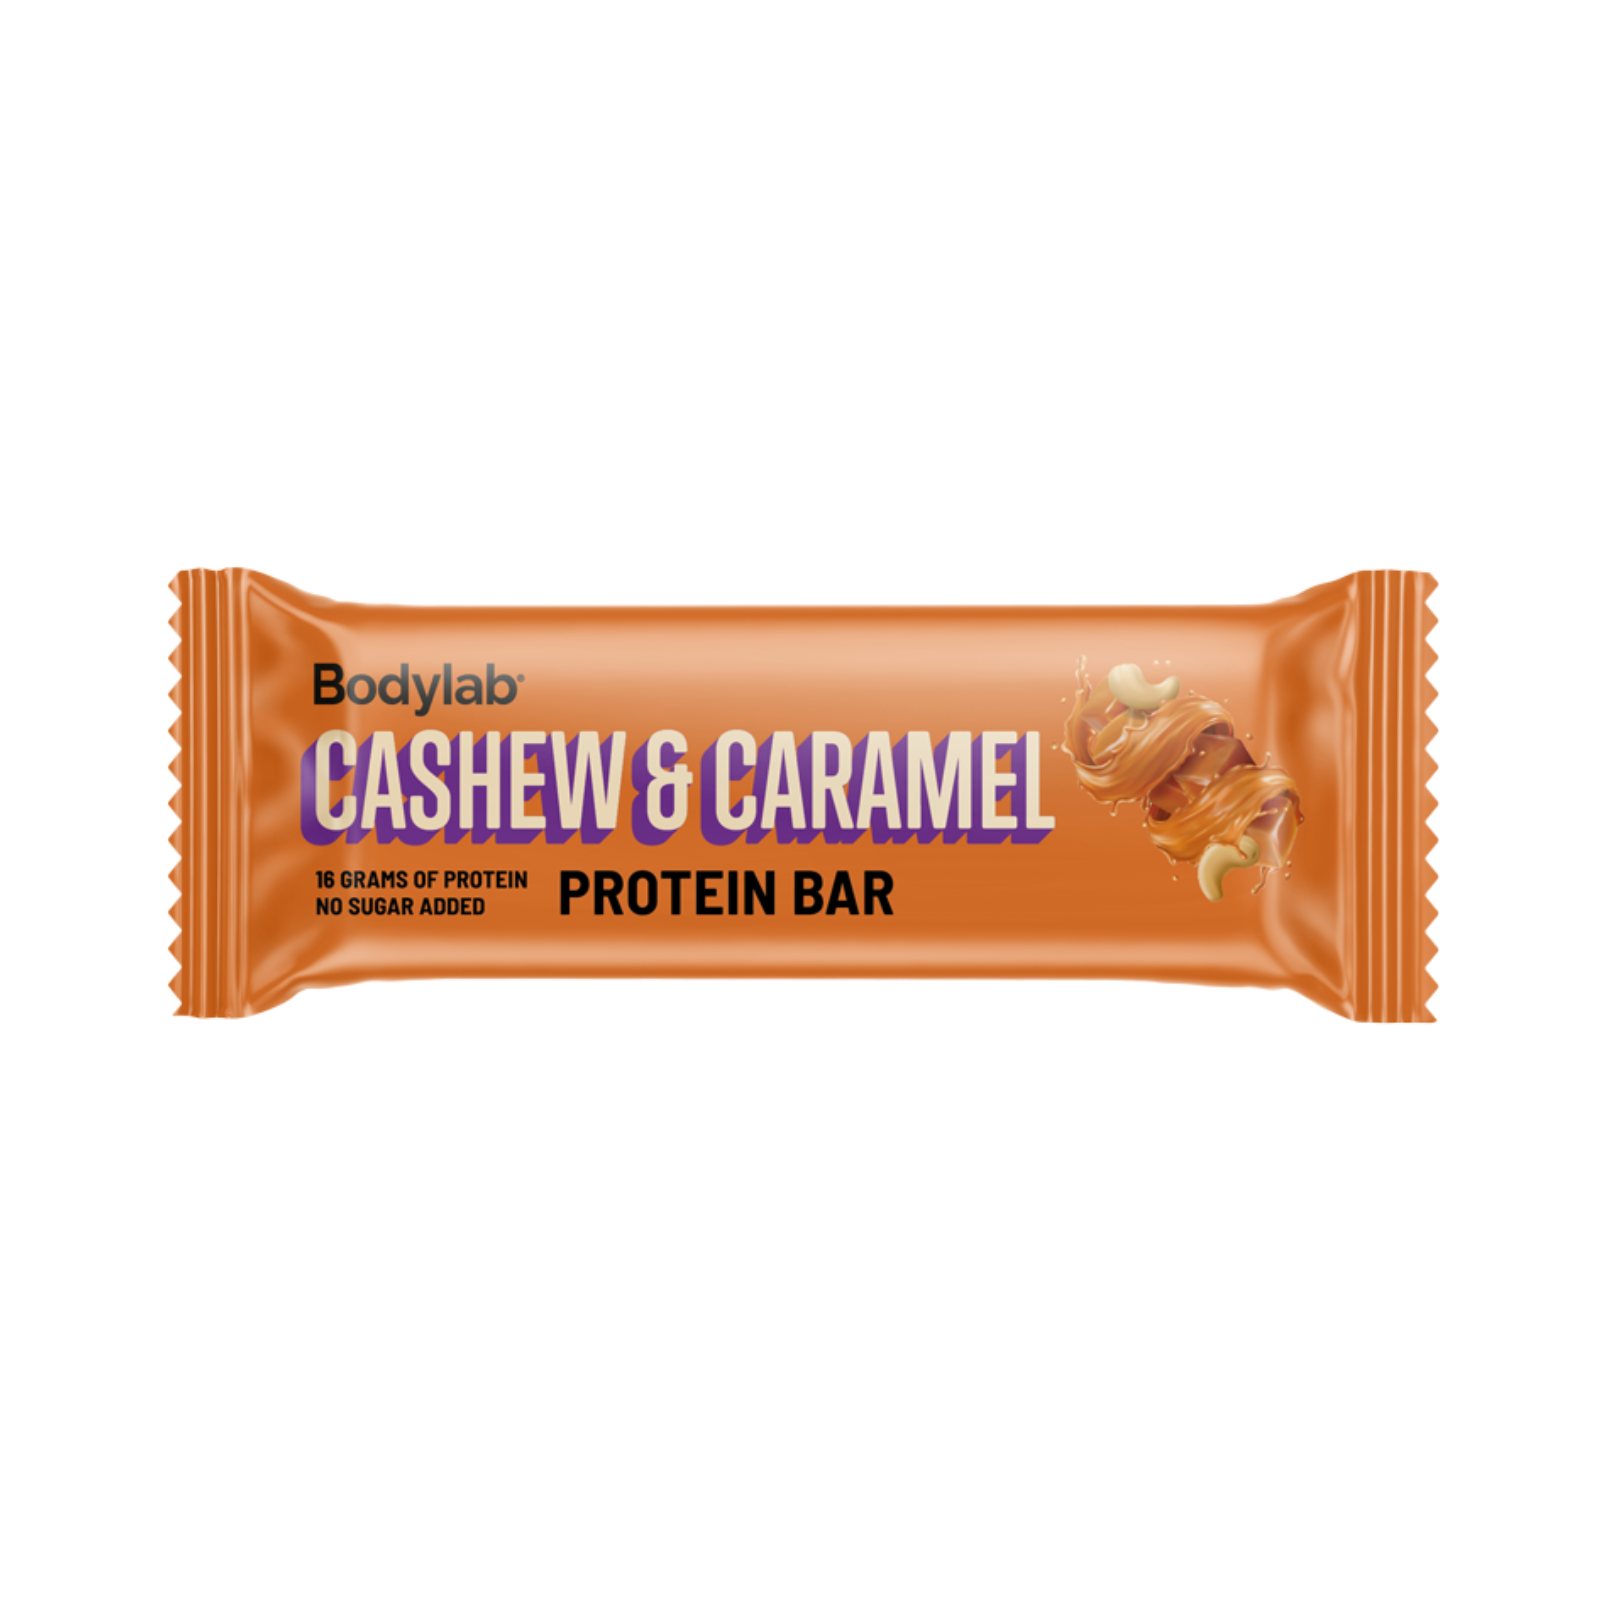 Bodylab Proteinbar cashew & caramel